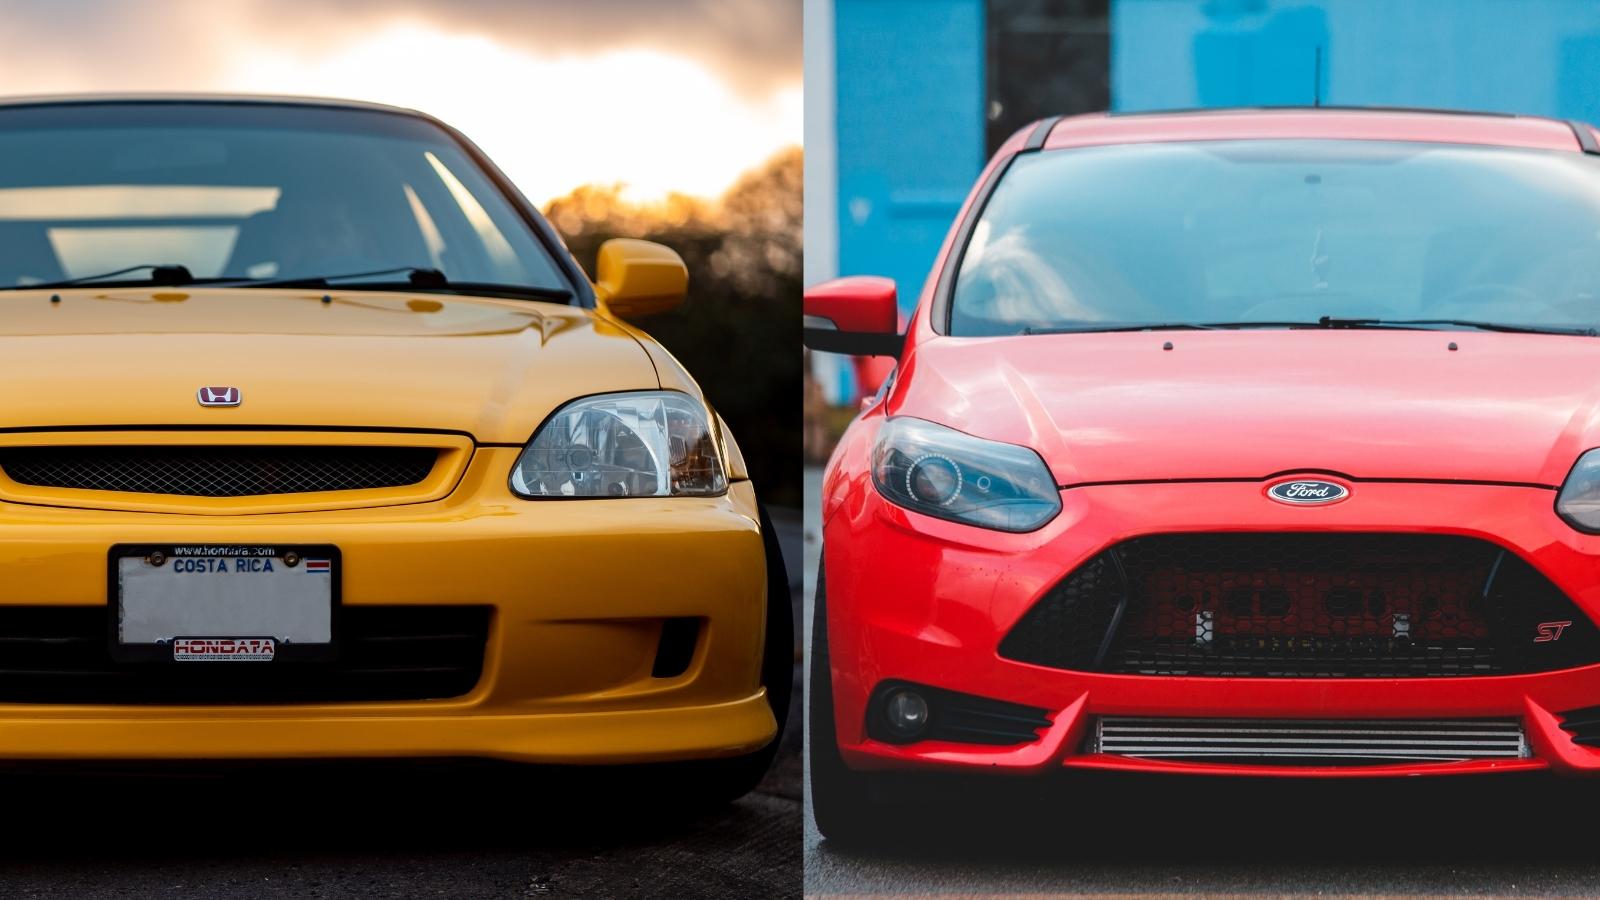 Что требует меньше обслуживания: Форд или Хонда?